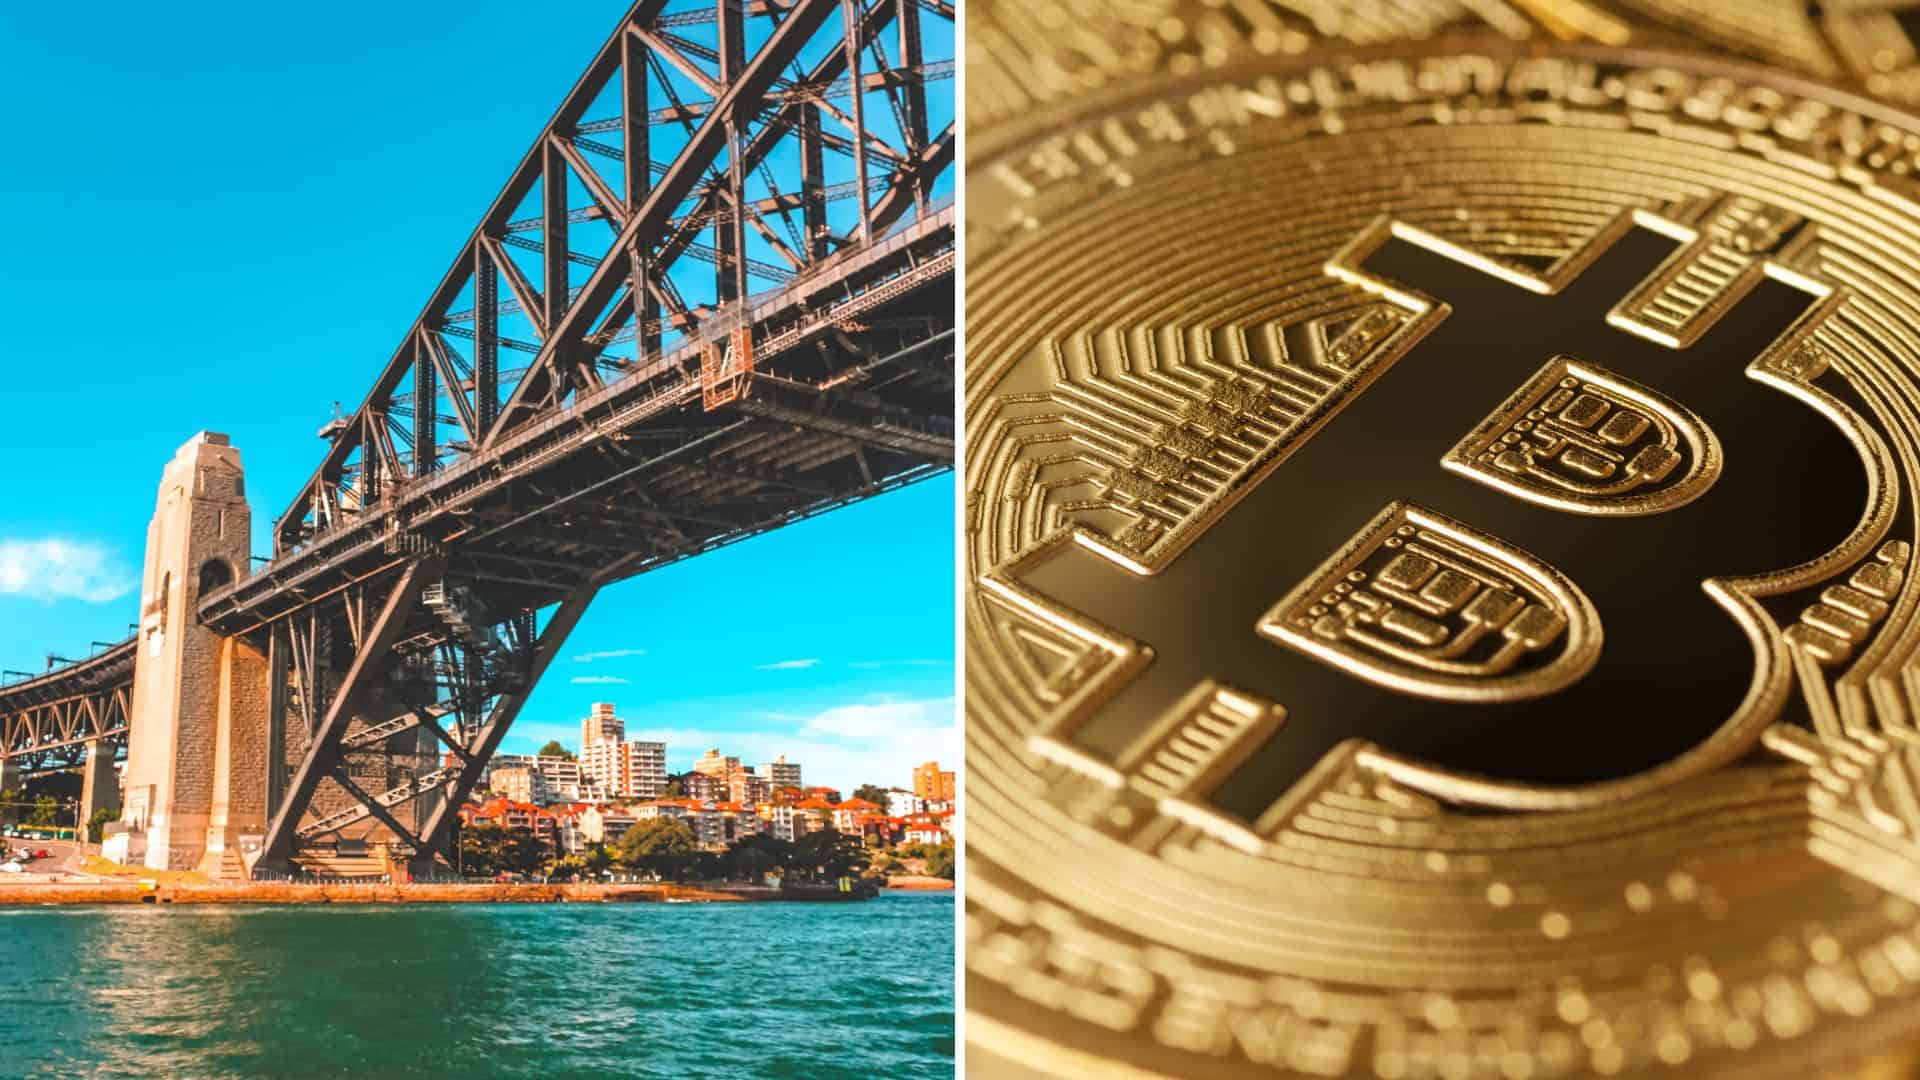 Btc markets australian banks 11 bitcoin to usd